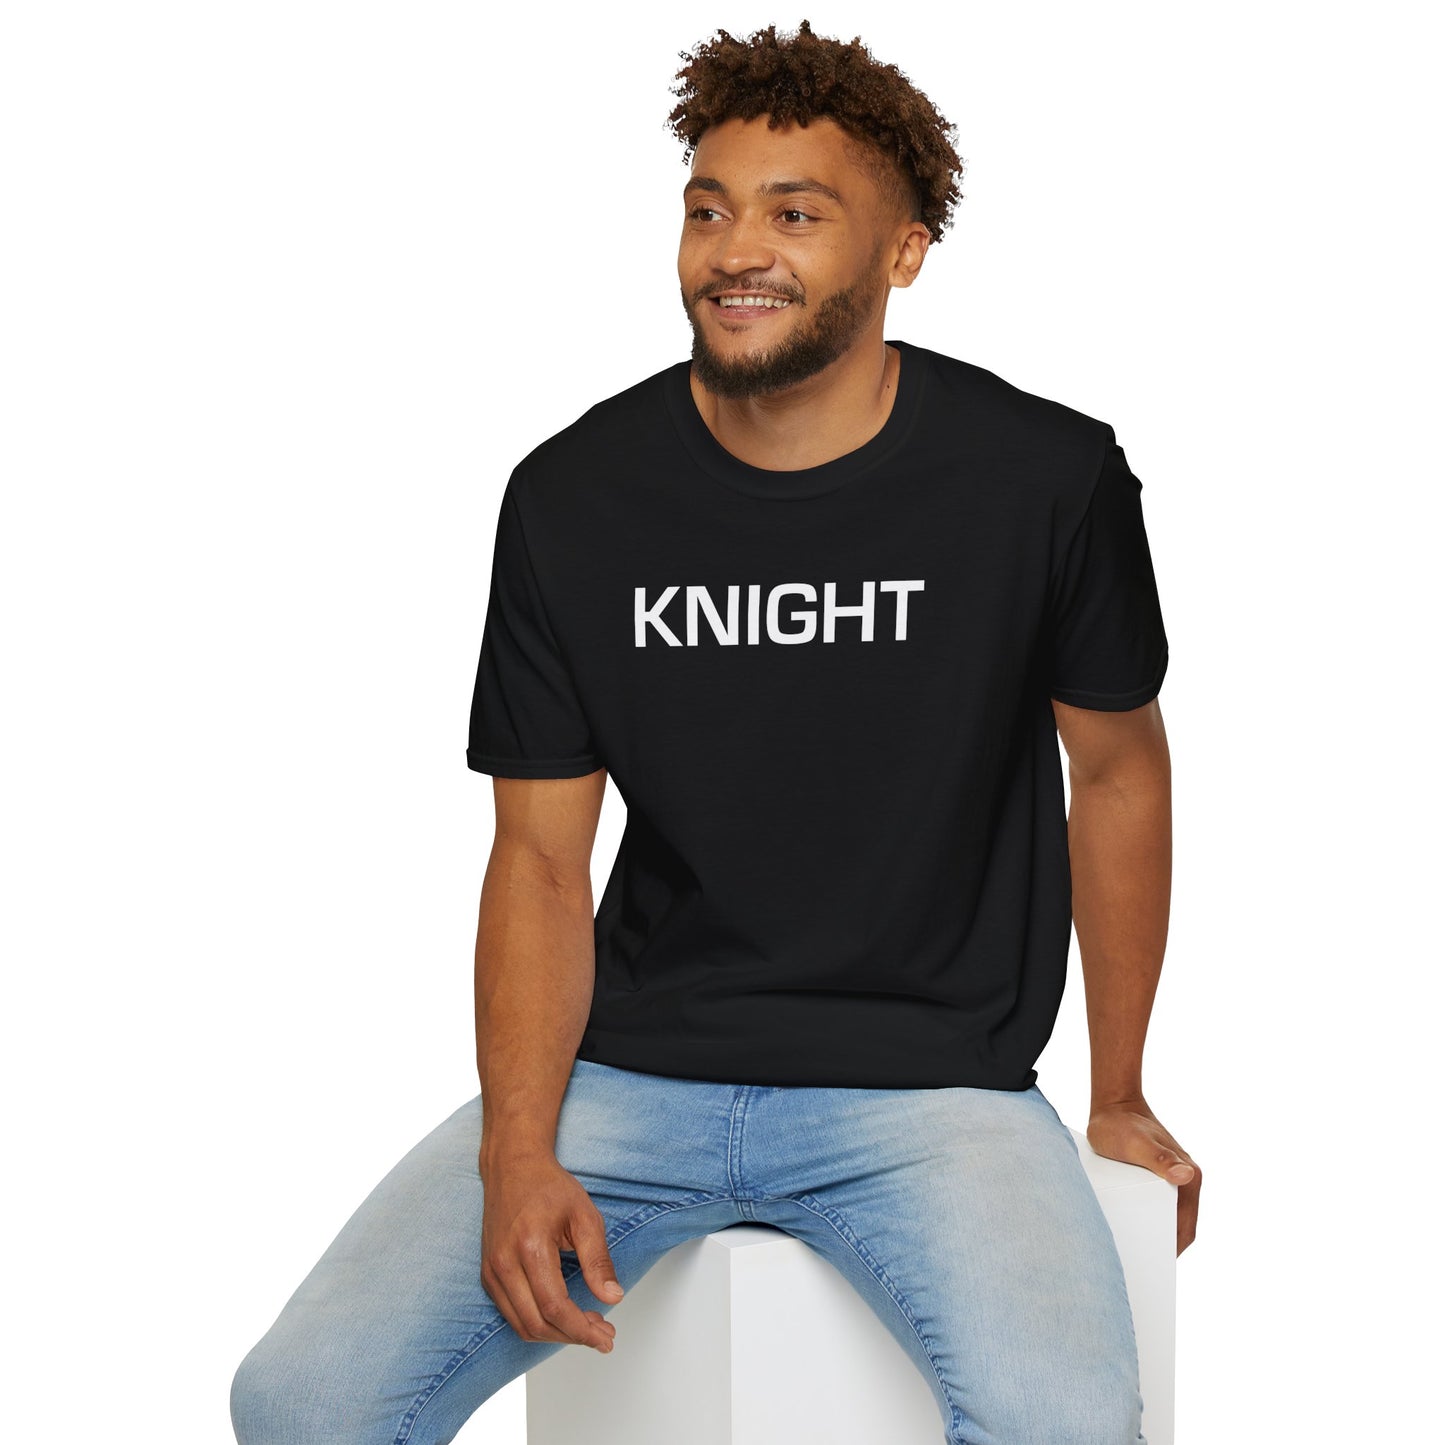 Knight SaberCraft